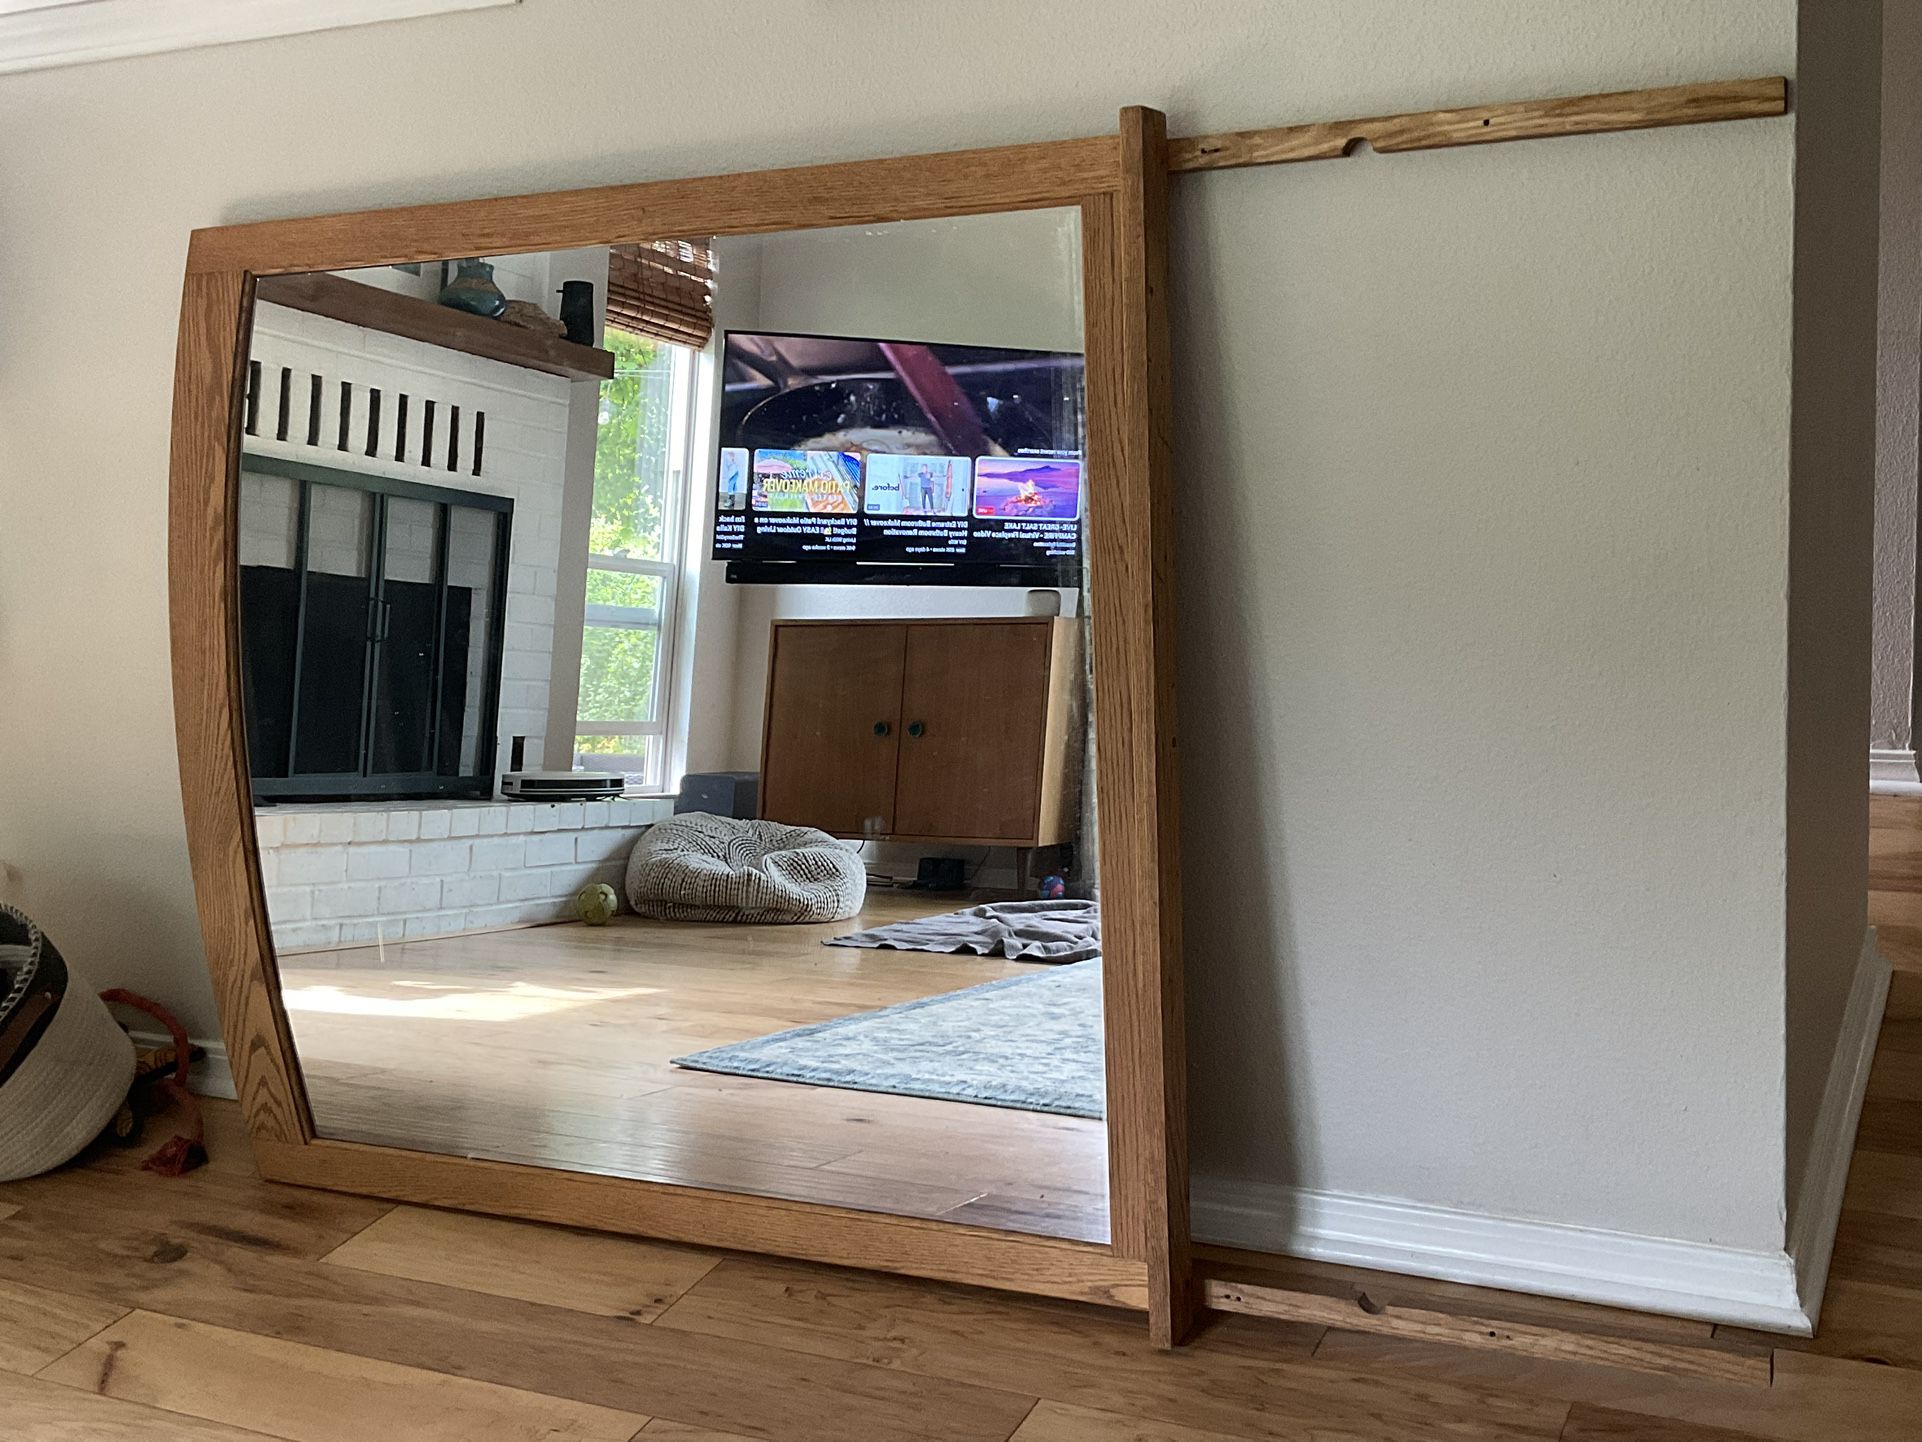 Large Oak Framed Mirror